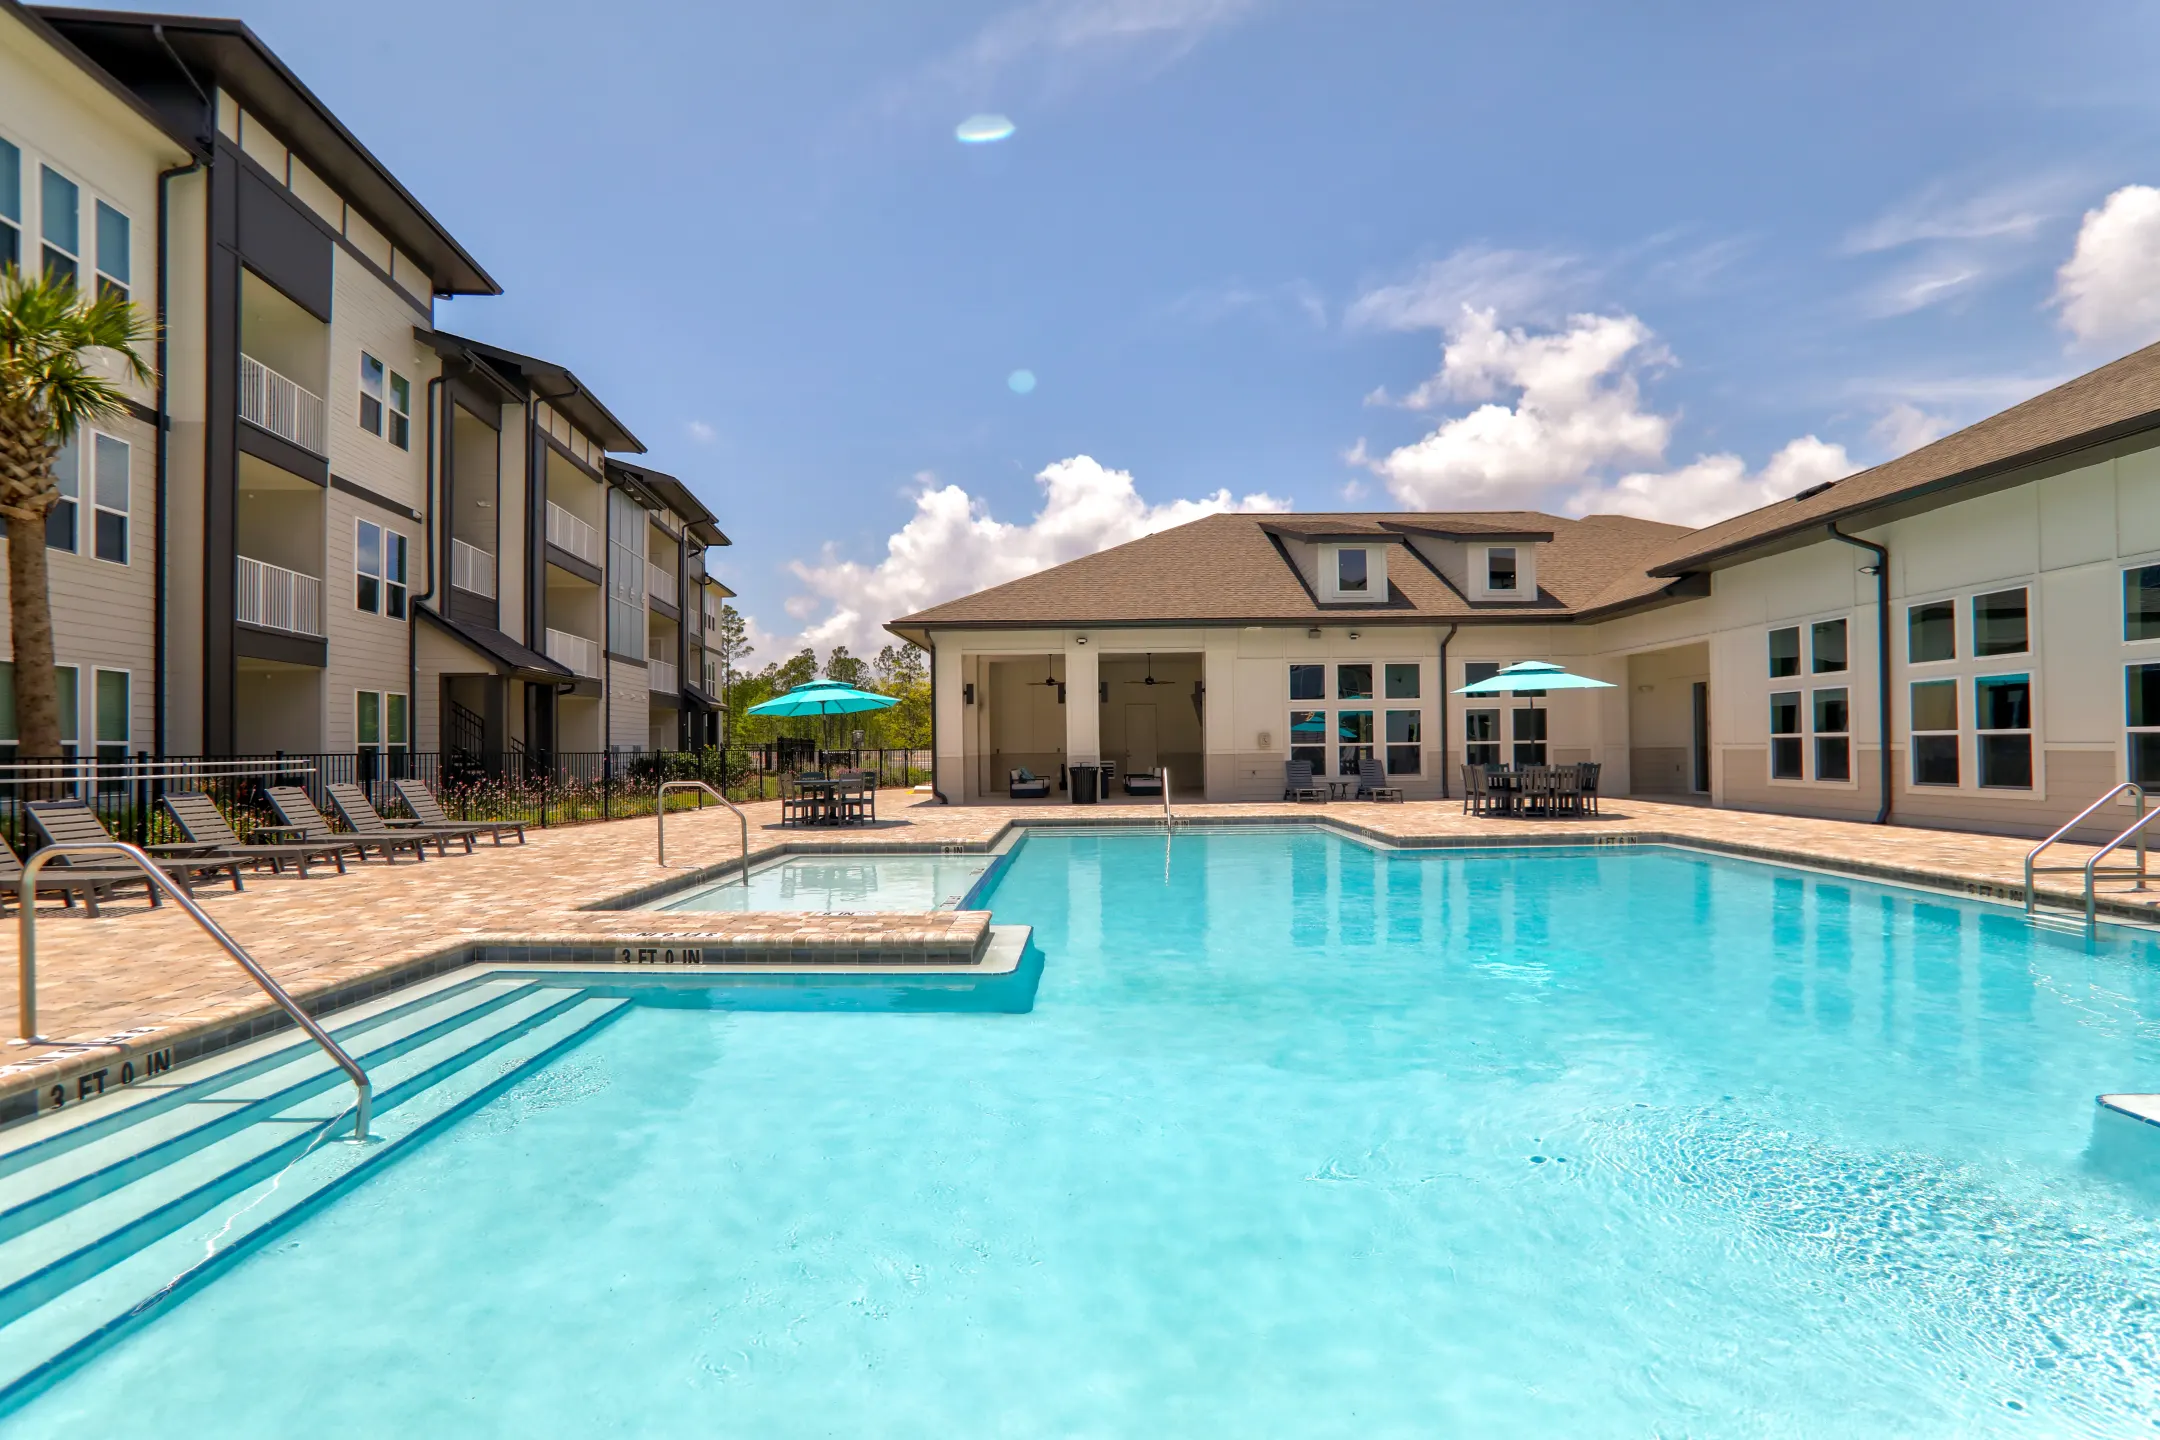 Pool - Preserve at Perdido Apartments - Pensacola, FL